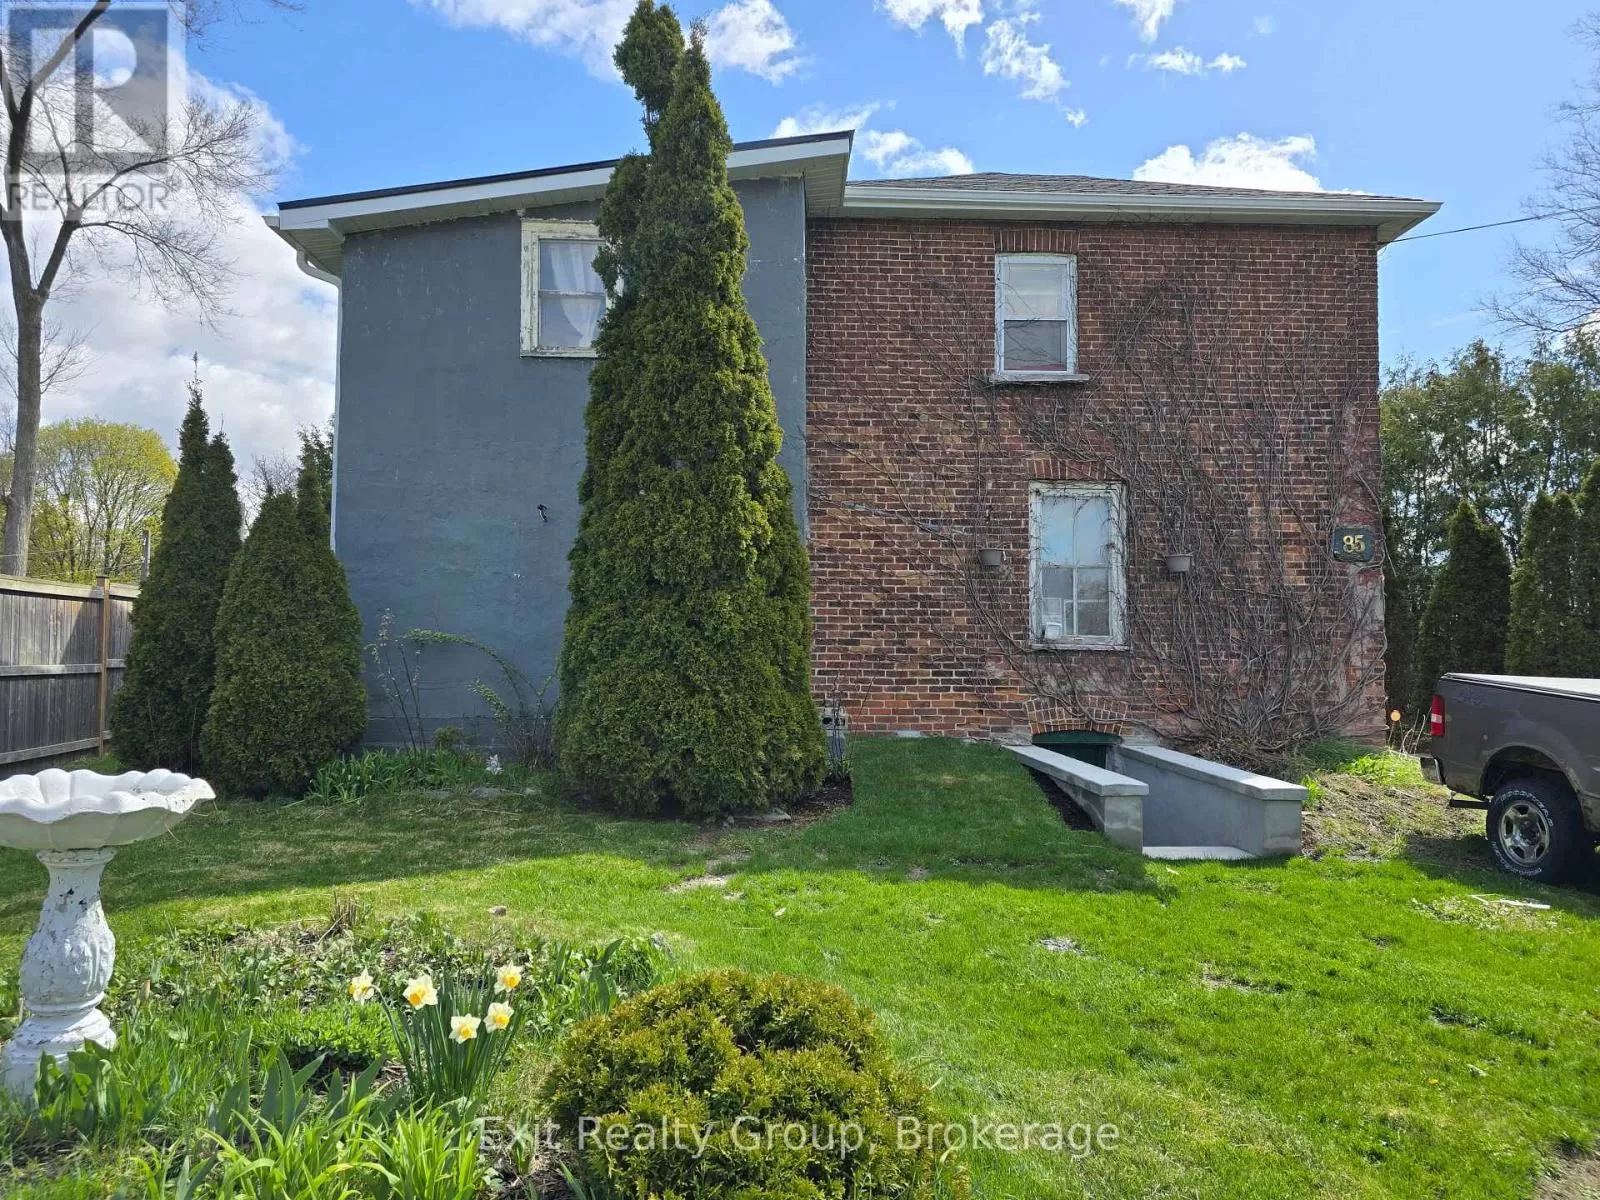 House for rent: 85 Lemoine Street, Belleville, Ontario K8P 4G8